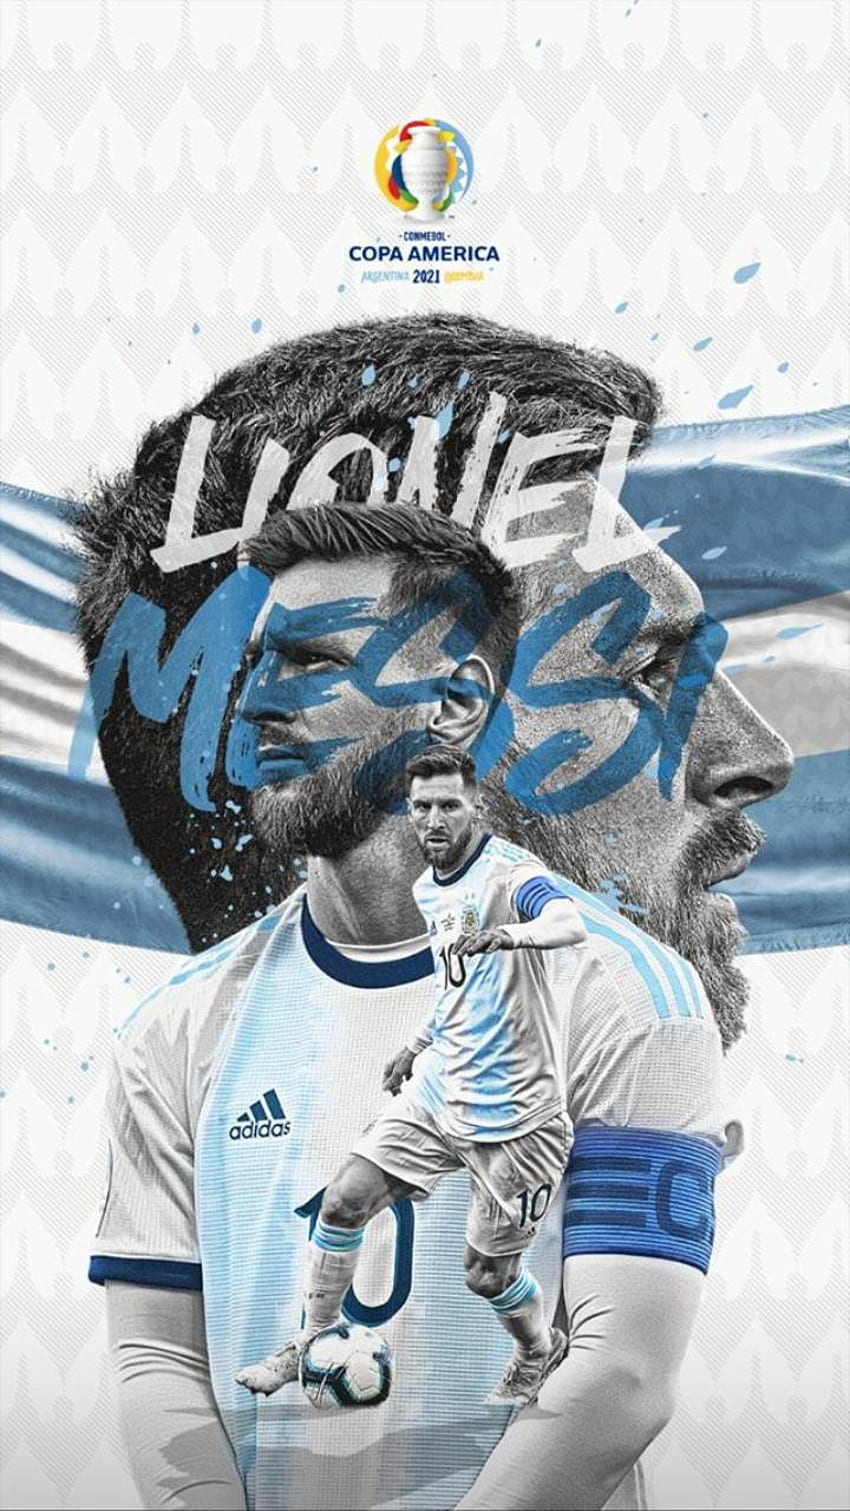 Hãy trang trí cho điện thoại của bạn với bức ảnh Messi độc đáo với hình nền đầy màu sắc nhé. Hình nền này sẽ khiến cho bạn luôn nhớ đến cầu thủ tuyệt vời của ba Lan là Lionel Messi mỗi khi sử dụng điện thoại của mình đấy.